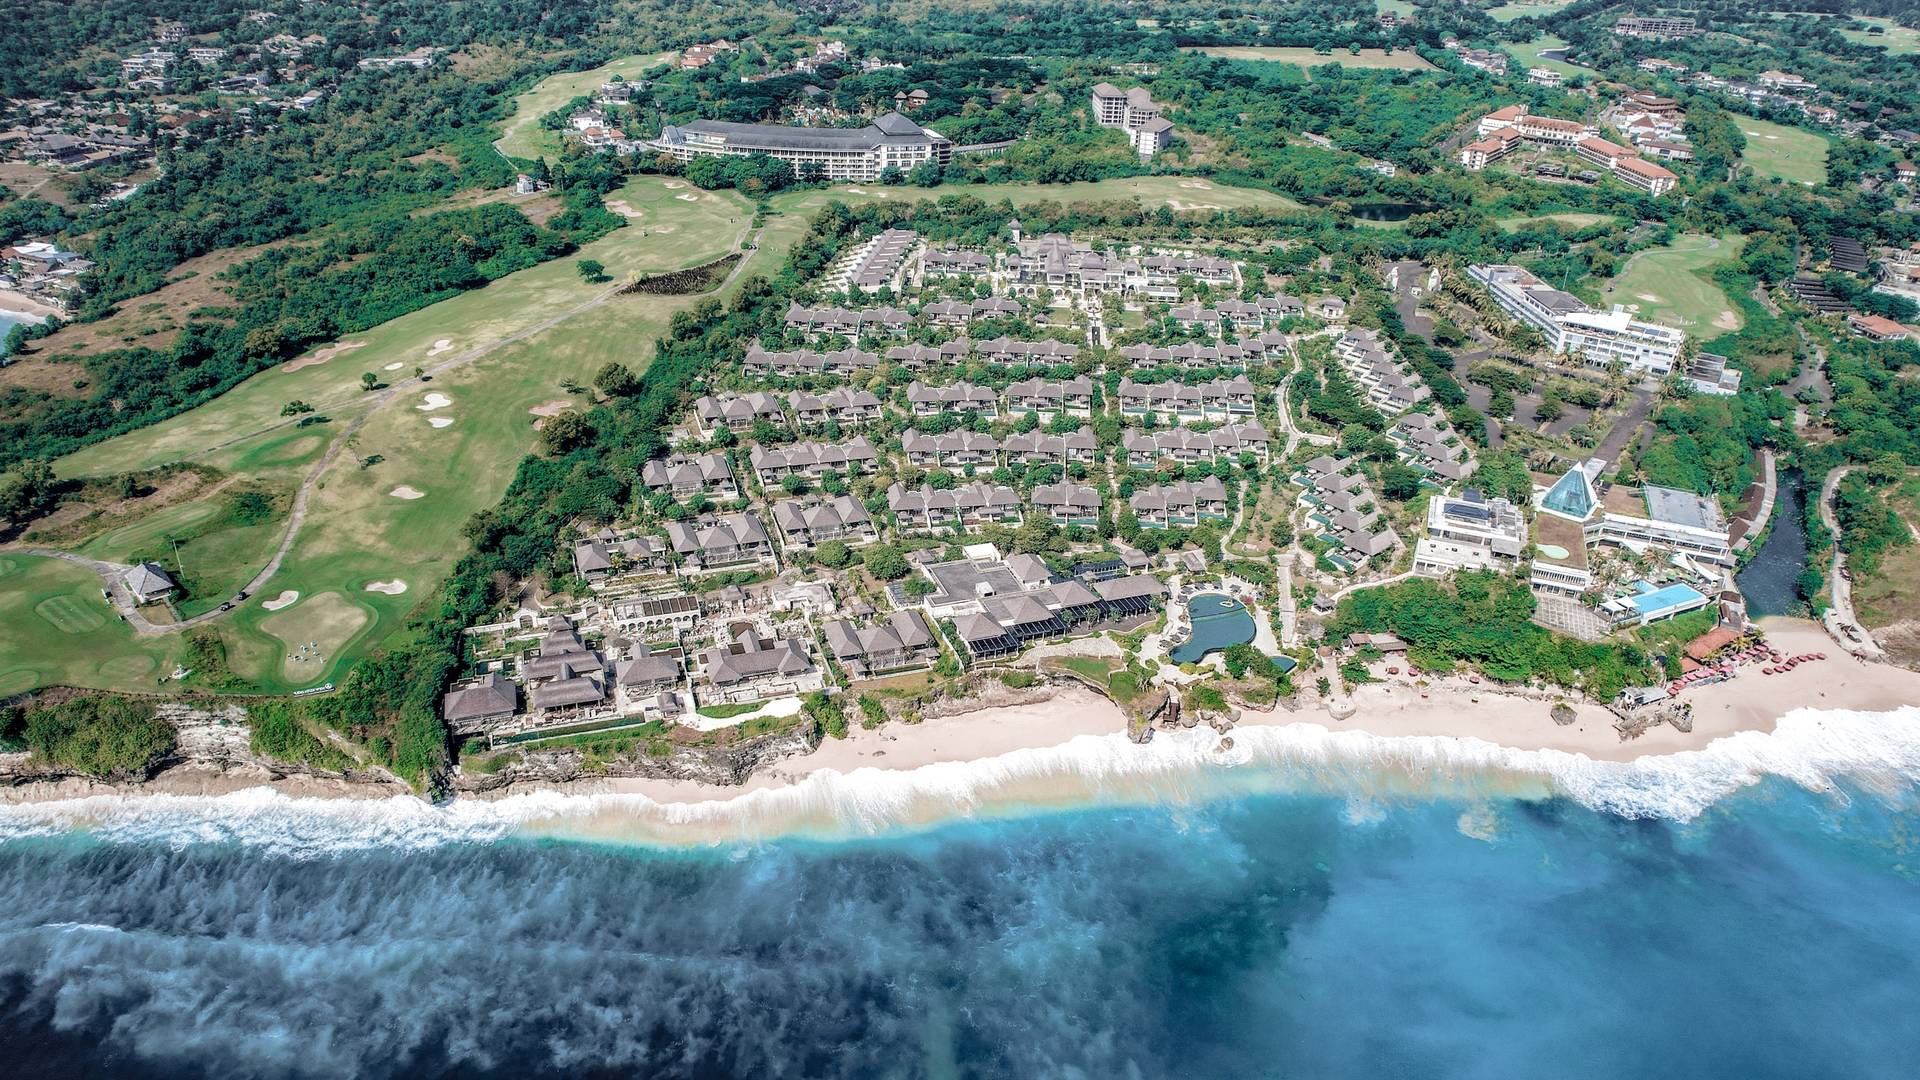 Aerial view of Jumeirah Bali